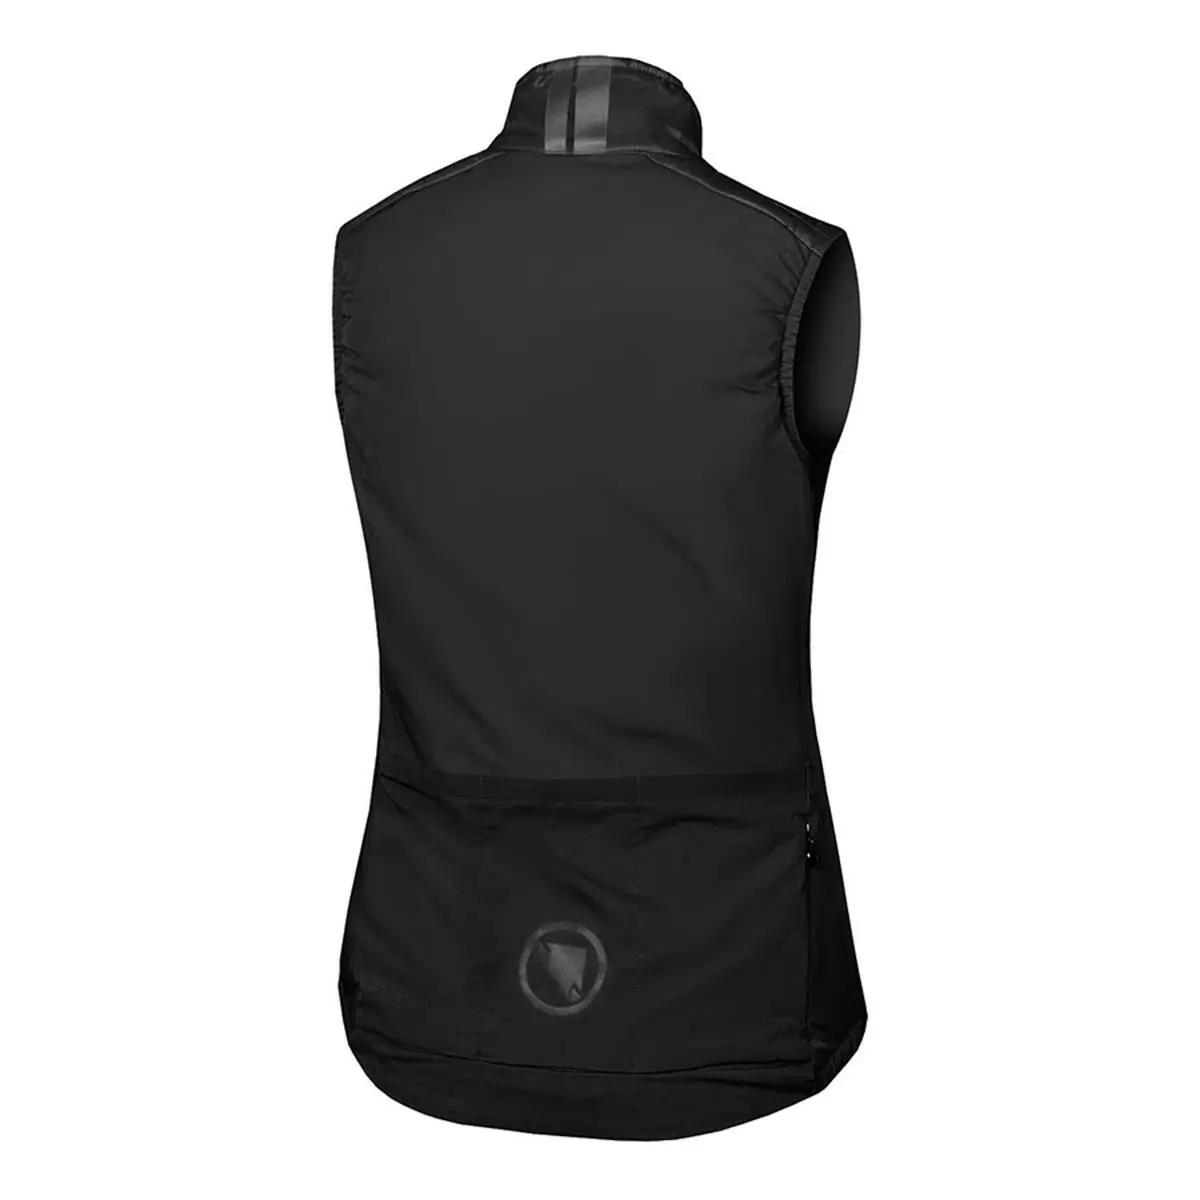 Pro SL PrimaLoft Rain/Windproof Vest Women's Vest Black size XS #1